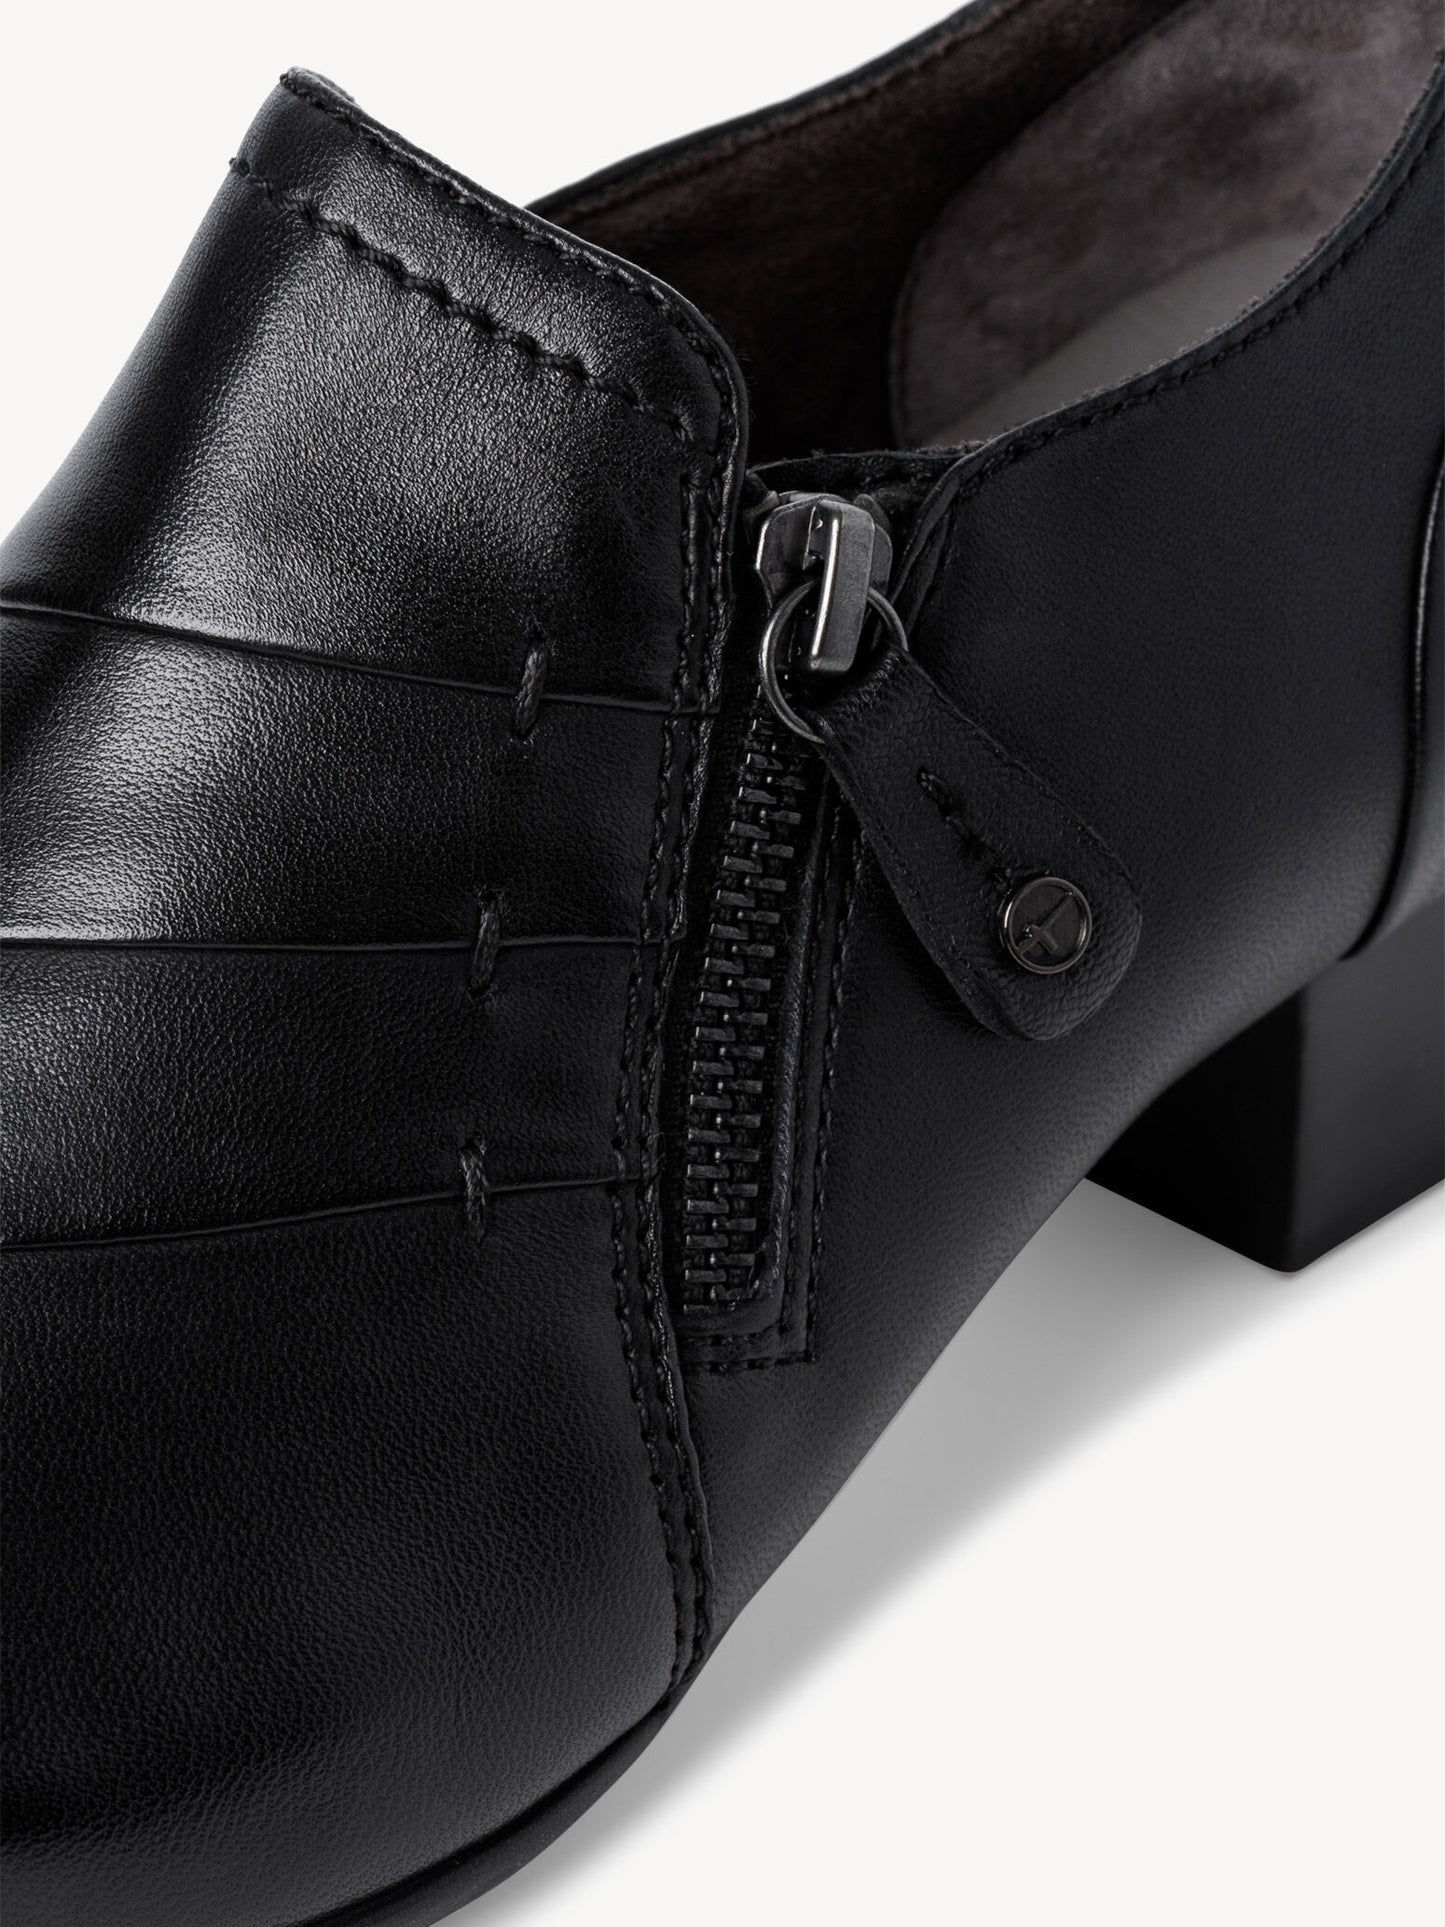 Tamaris Women's 8-8-84300-29 Leather Trotteur Shoes Black